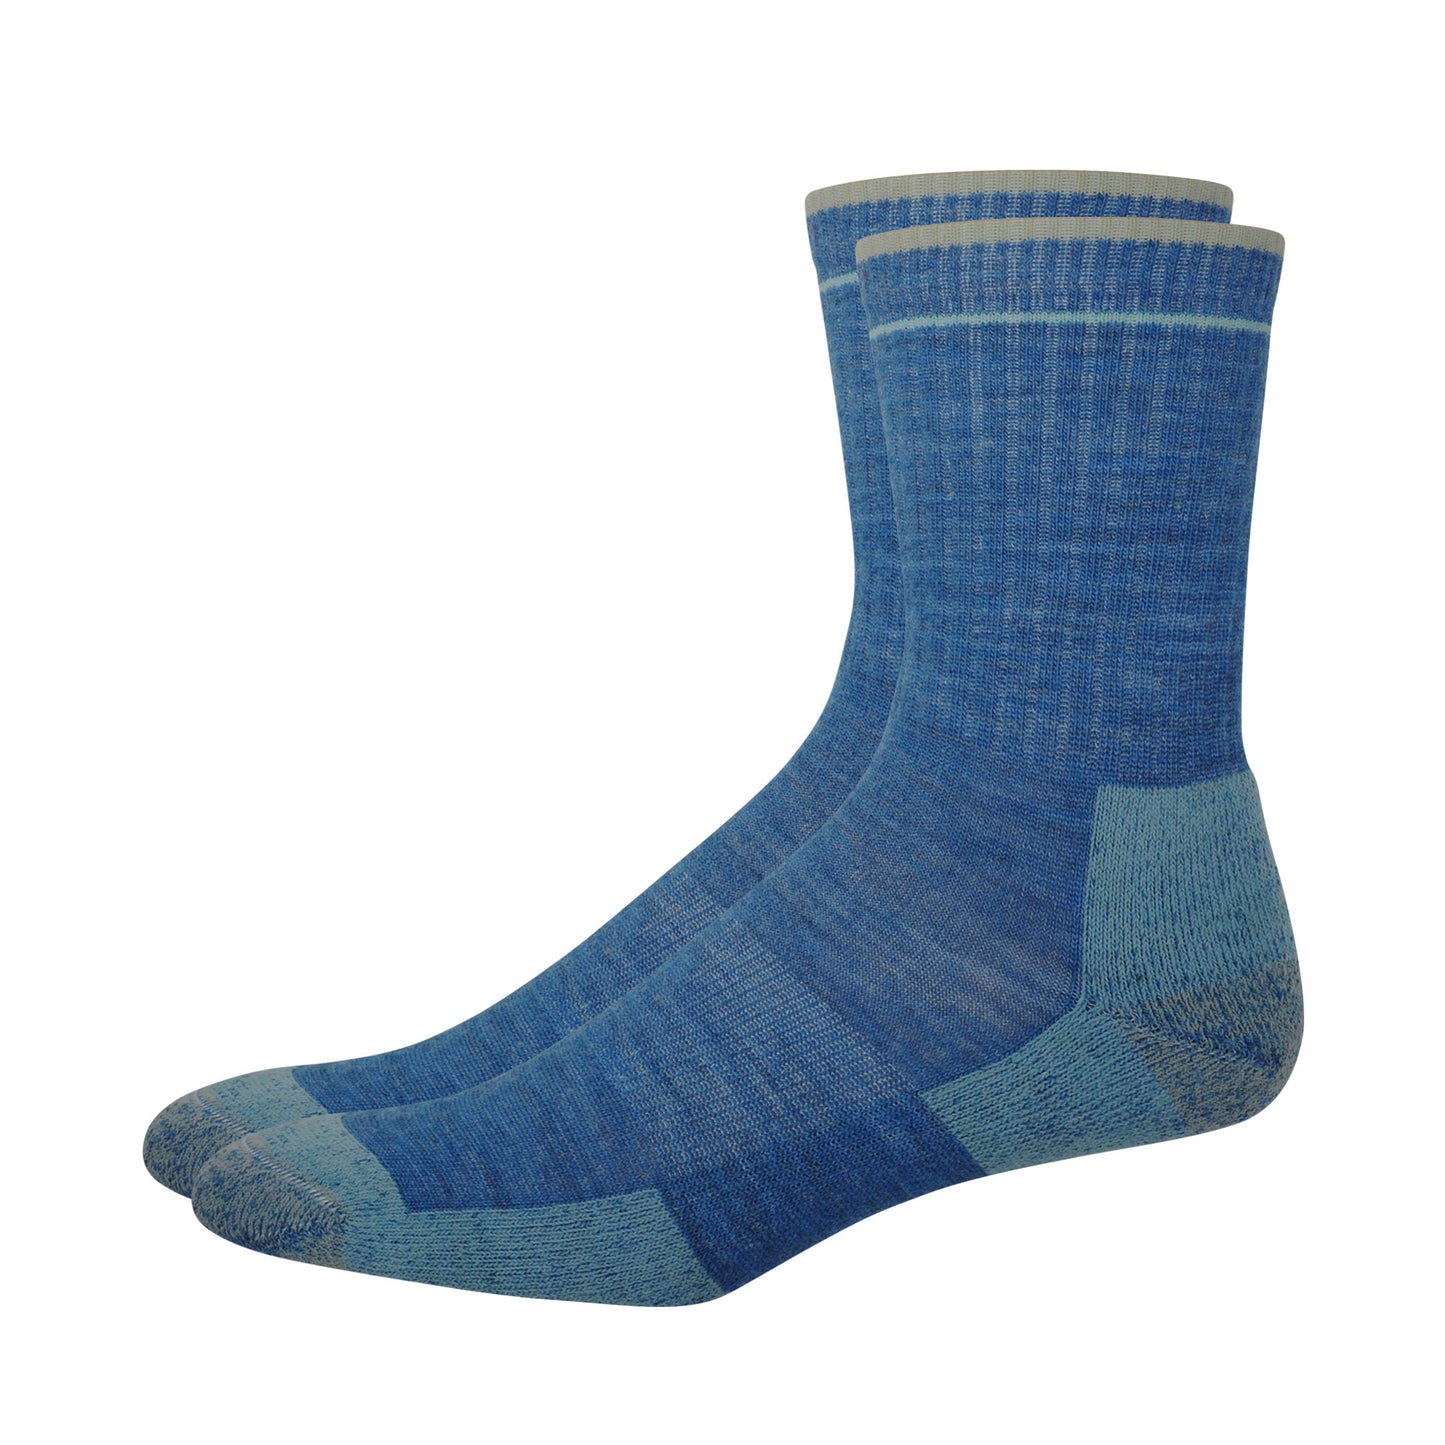 Pair of blue merino wool outdoor socks. 